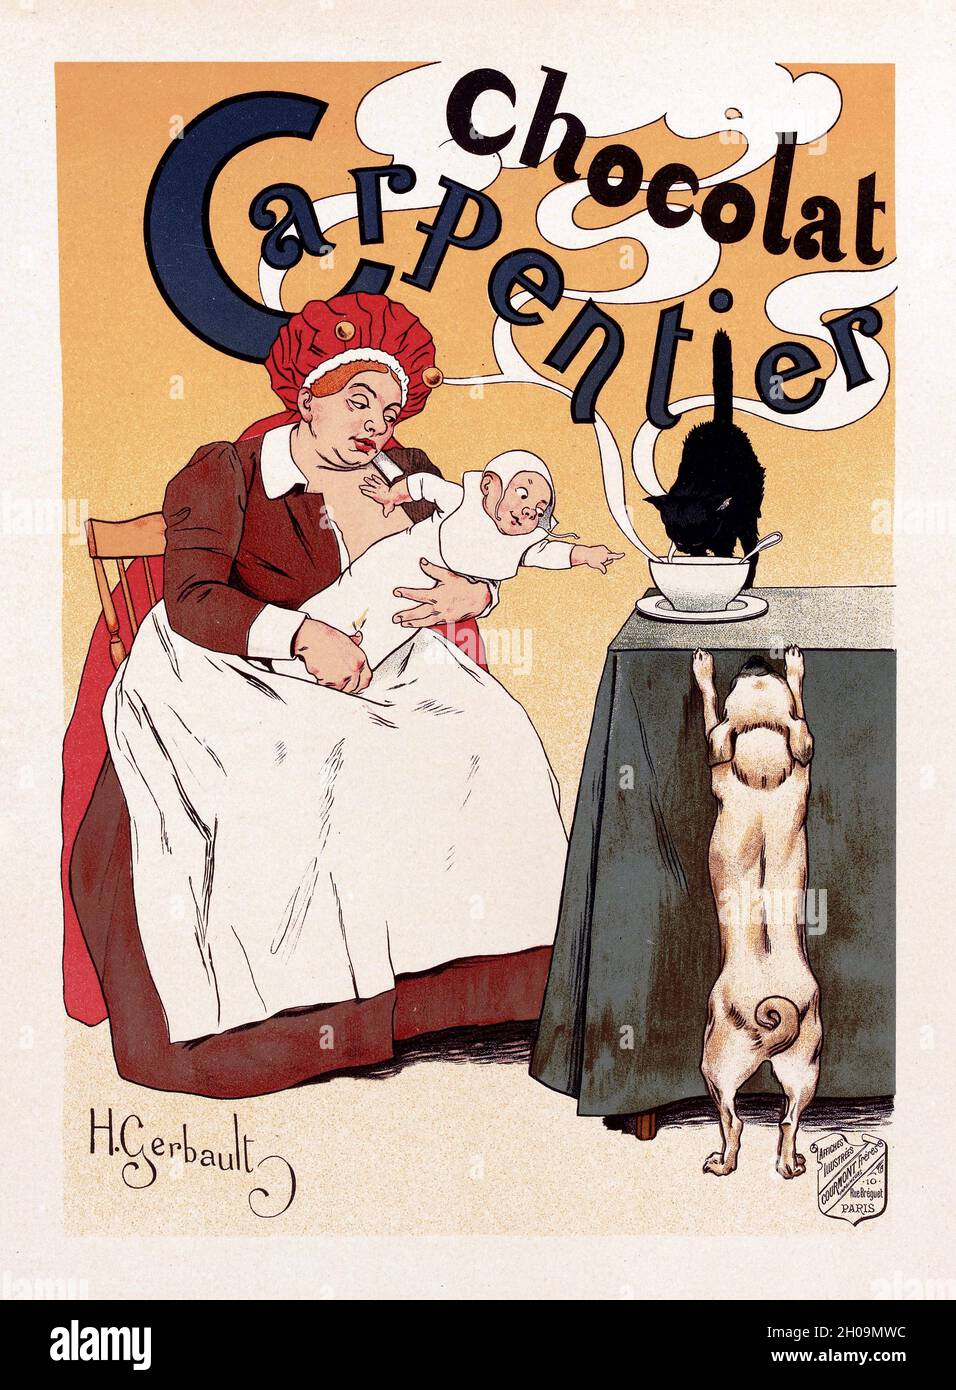 Französisches Vintage-Poster, auf dem das Kindermädchen ein Baby in der Hand hält, das auf eine Tasse mit dampfender heißer Schokolade auf einem Tisch zeigt, während eine schwarze Katze und ein weißer Hund versuchen, ein Leck zu bekommen, mit Werbung für Chocolat Chocolate, von Henry Gerbault , 1895 Stockfoto